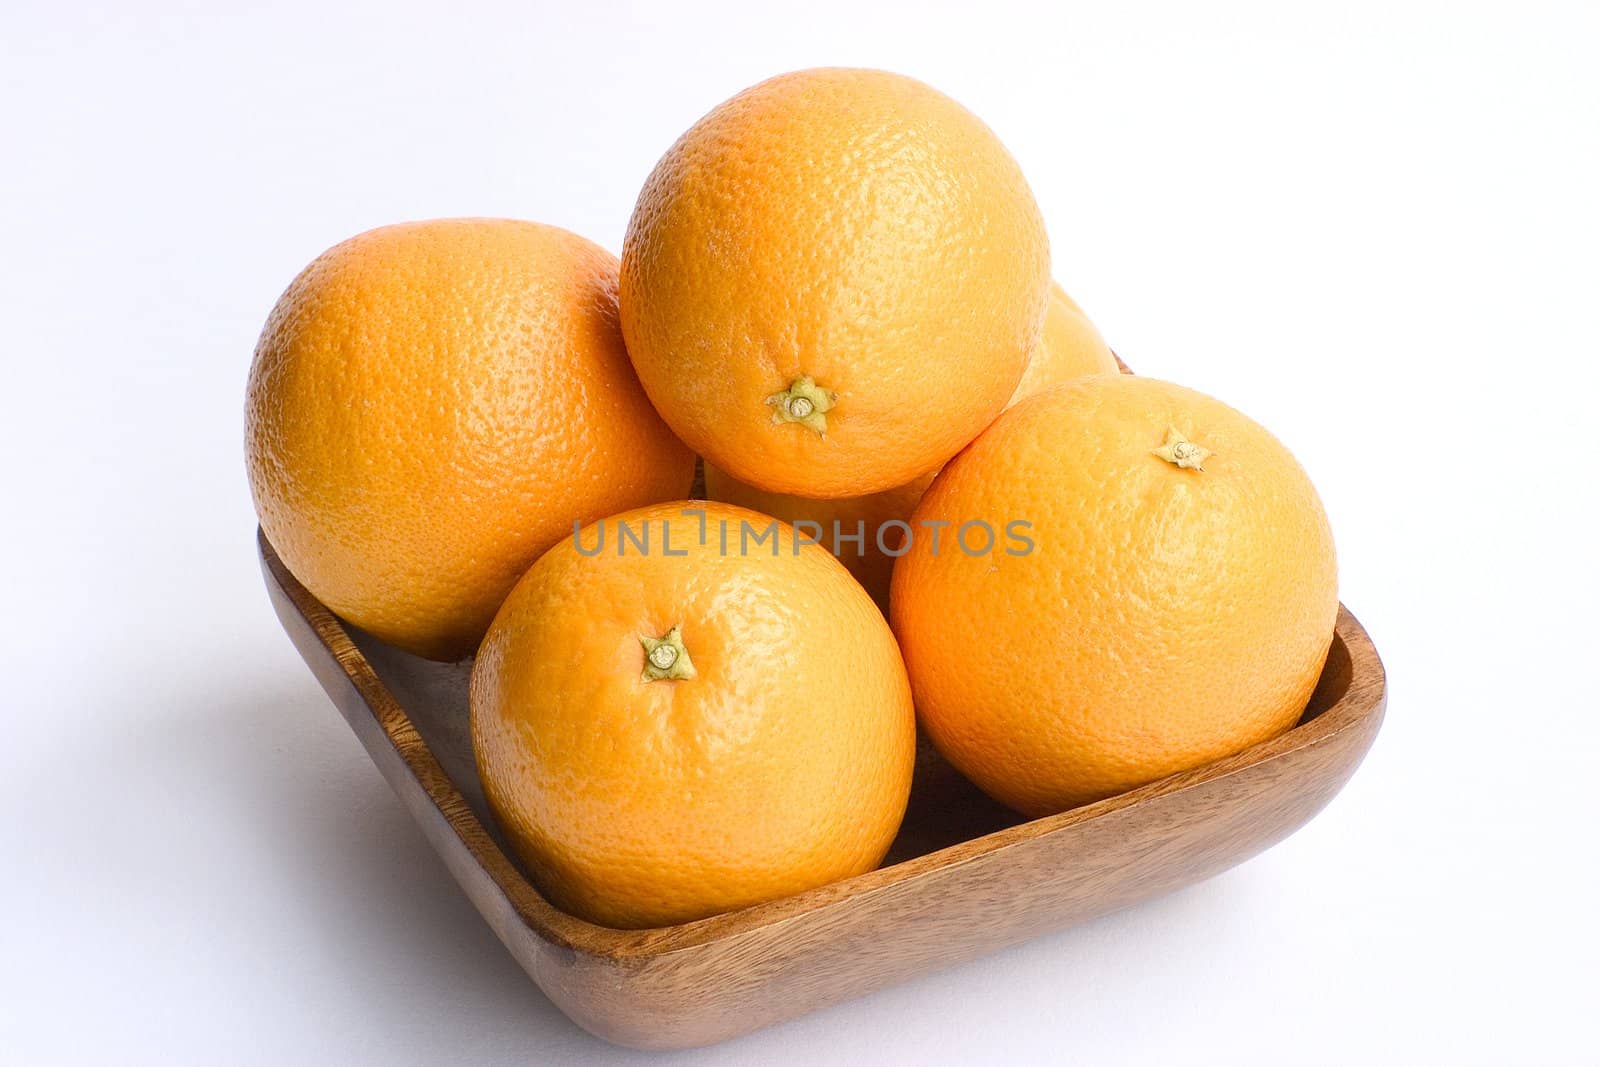 oranges by miradrozdowski